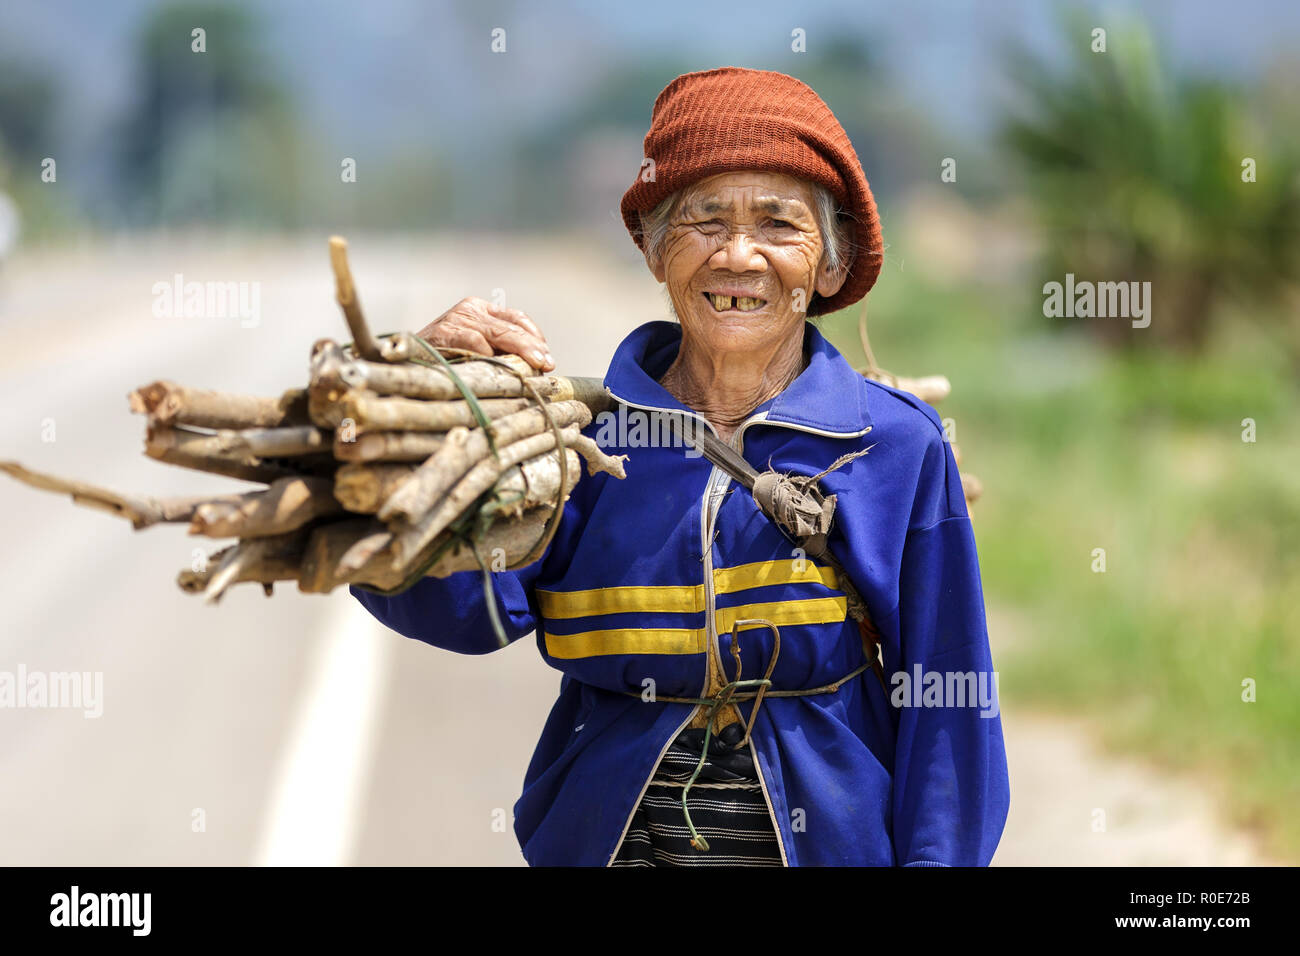 FU CHI FA, Tailandia, marzo 4, 2011: una mujer mayor agricultor está llevando un palo bunch en el campo de Fu chi fa, al norte de Tailandia Foto de stock